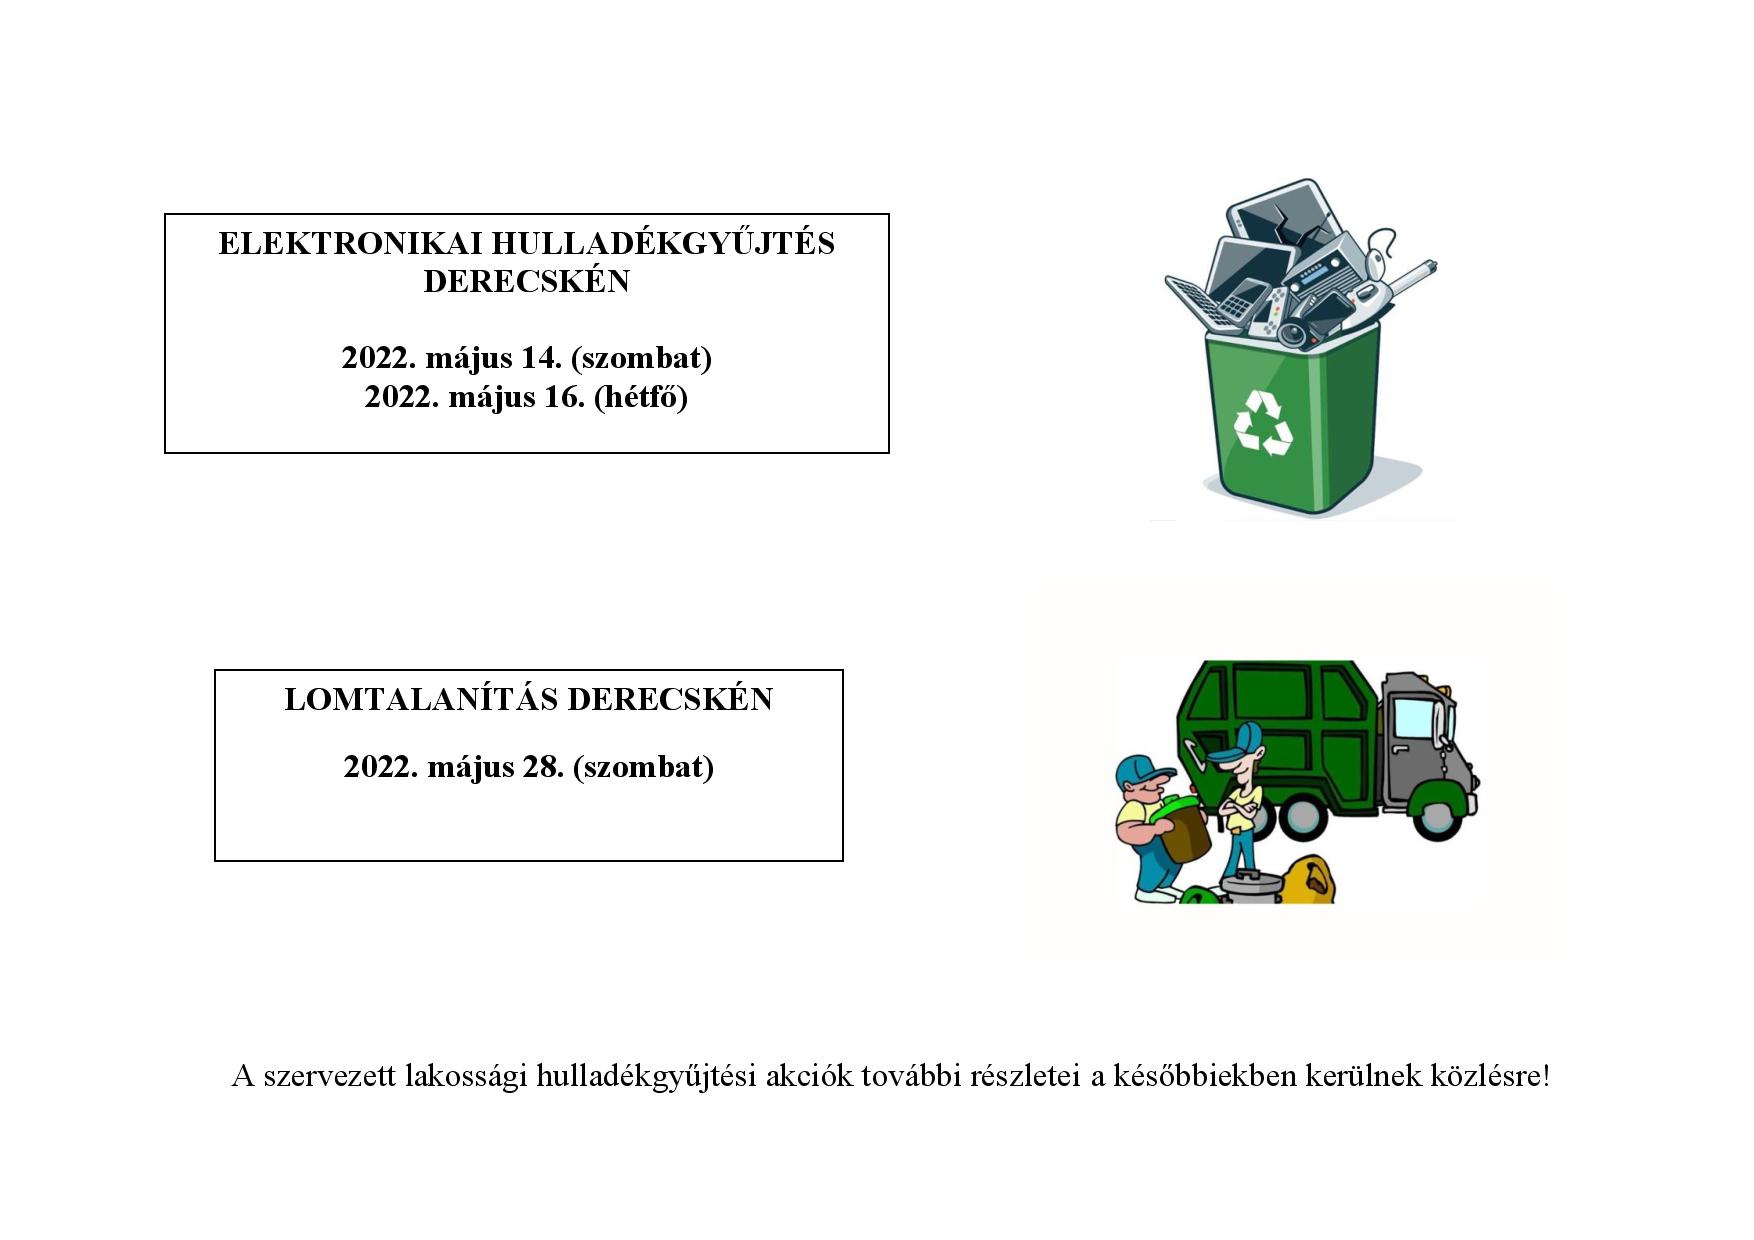 Elektronikai hulladékgyűjtés és lomtalanítás Derecskén